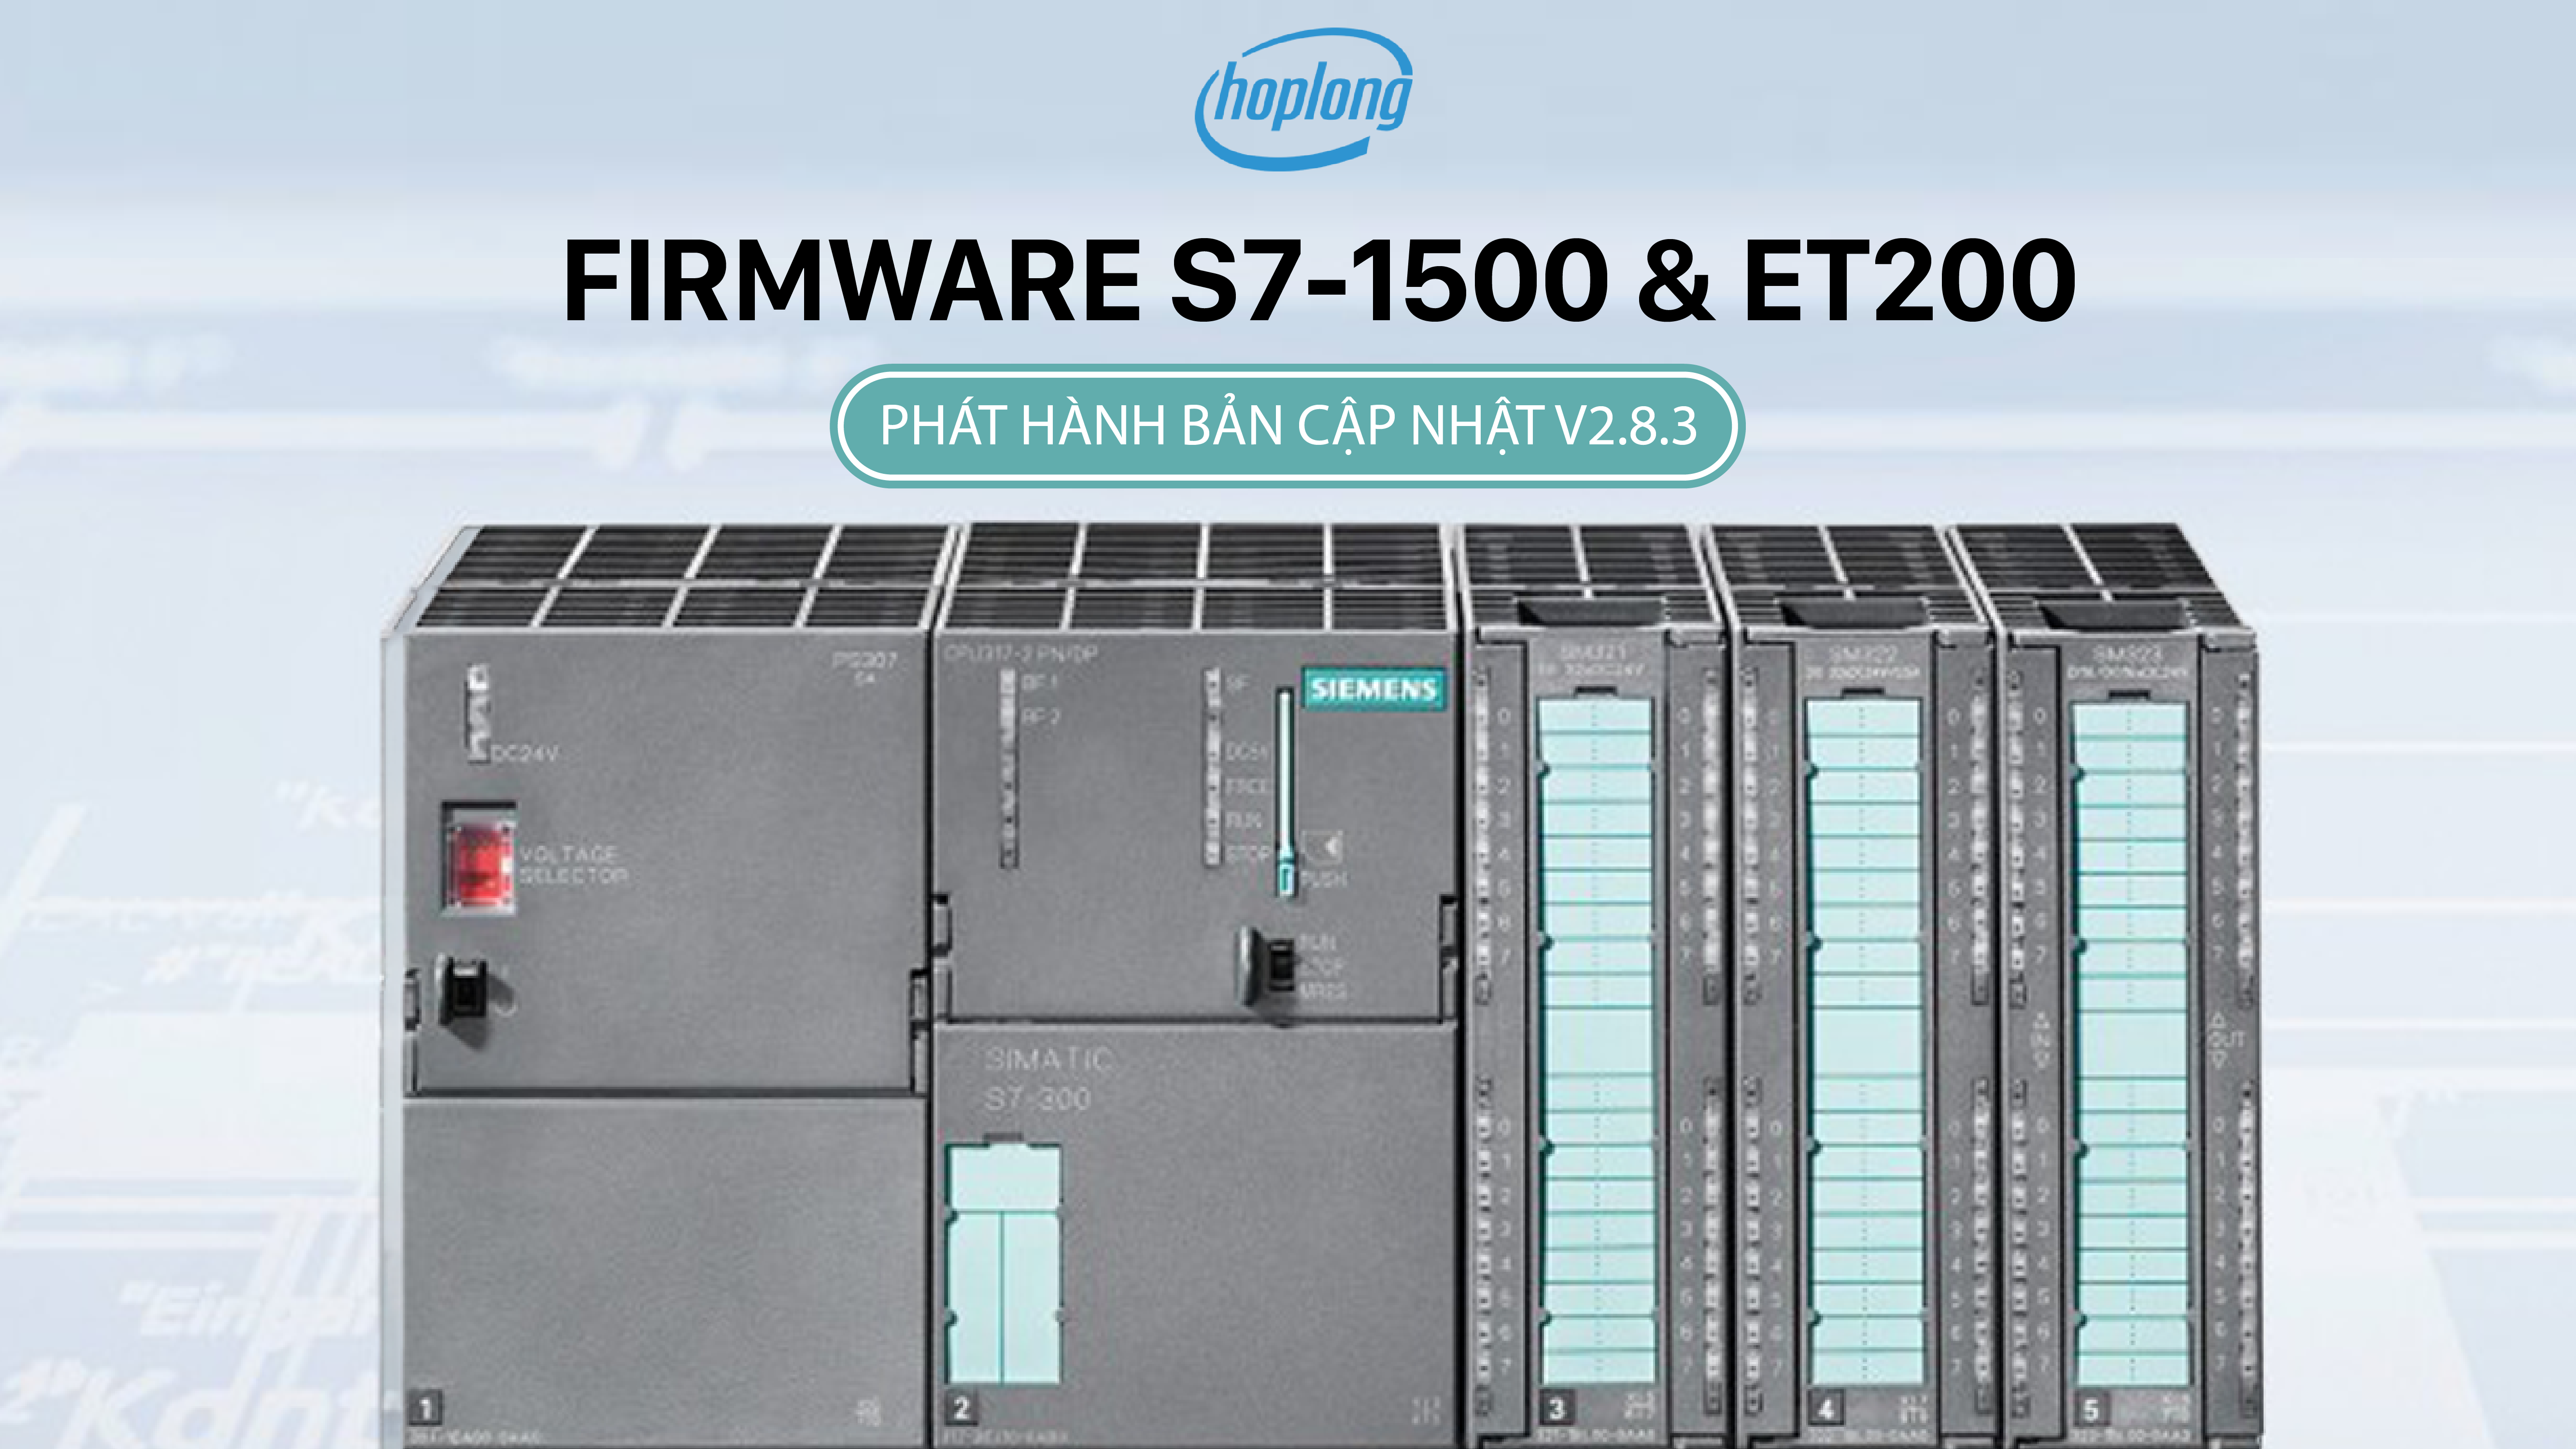 Firmware S7-1500 & ET200  phát hành bản cập nhật V2.8.3